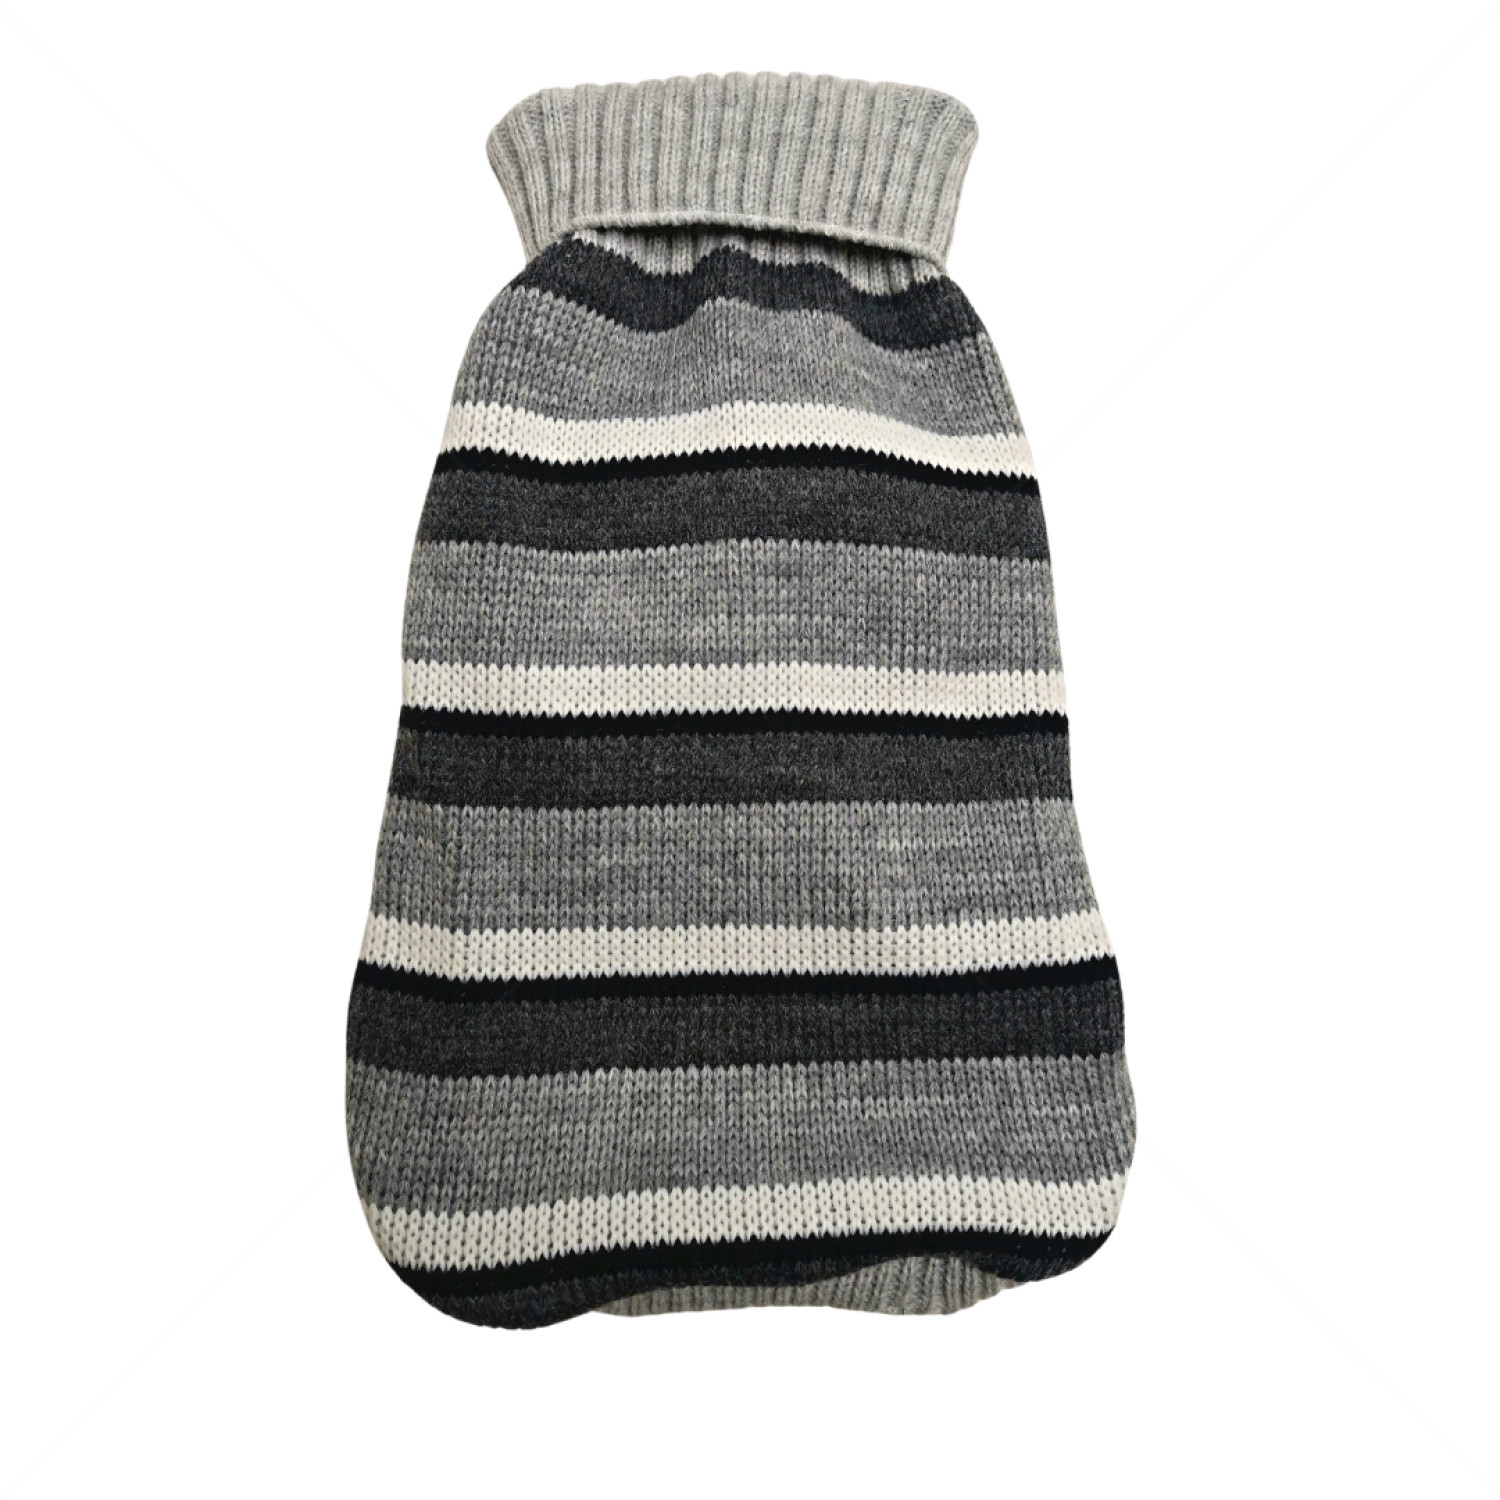 Плетен пуловер поло Модел 84, HAPPY PUPPY, XL, 40-44 см.